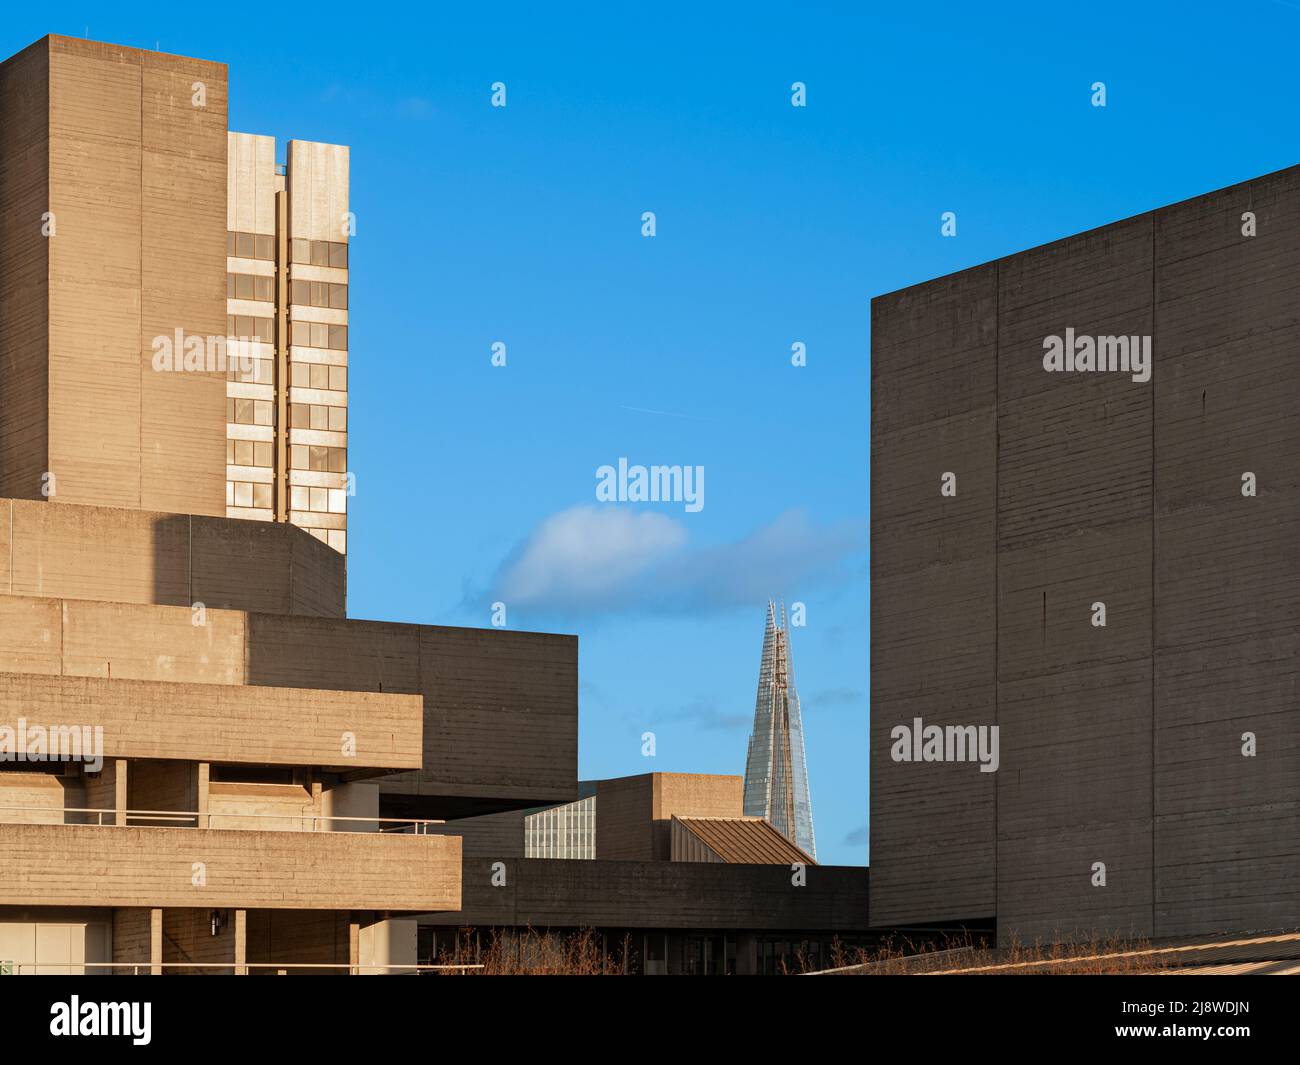 La facciata brutalista del Teatro Nazionale di Londra con l'architettura neofonuristica dello Shard in lontananza. Londra. Foto Stock